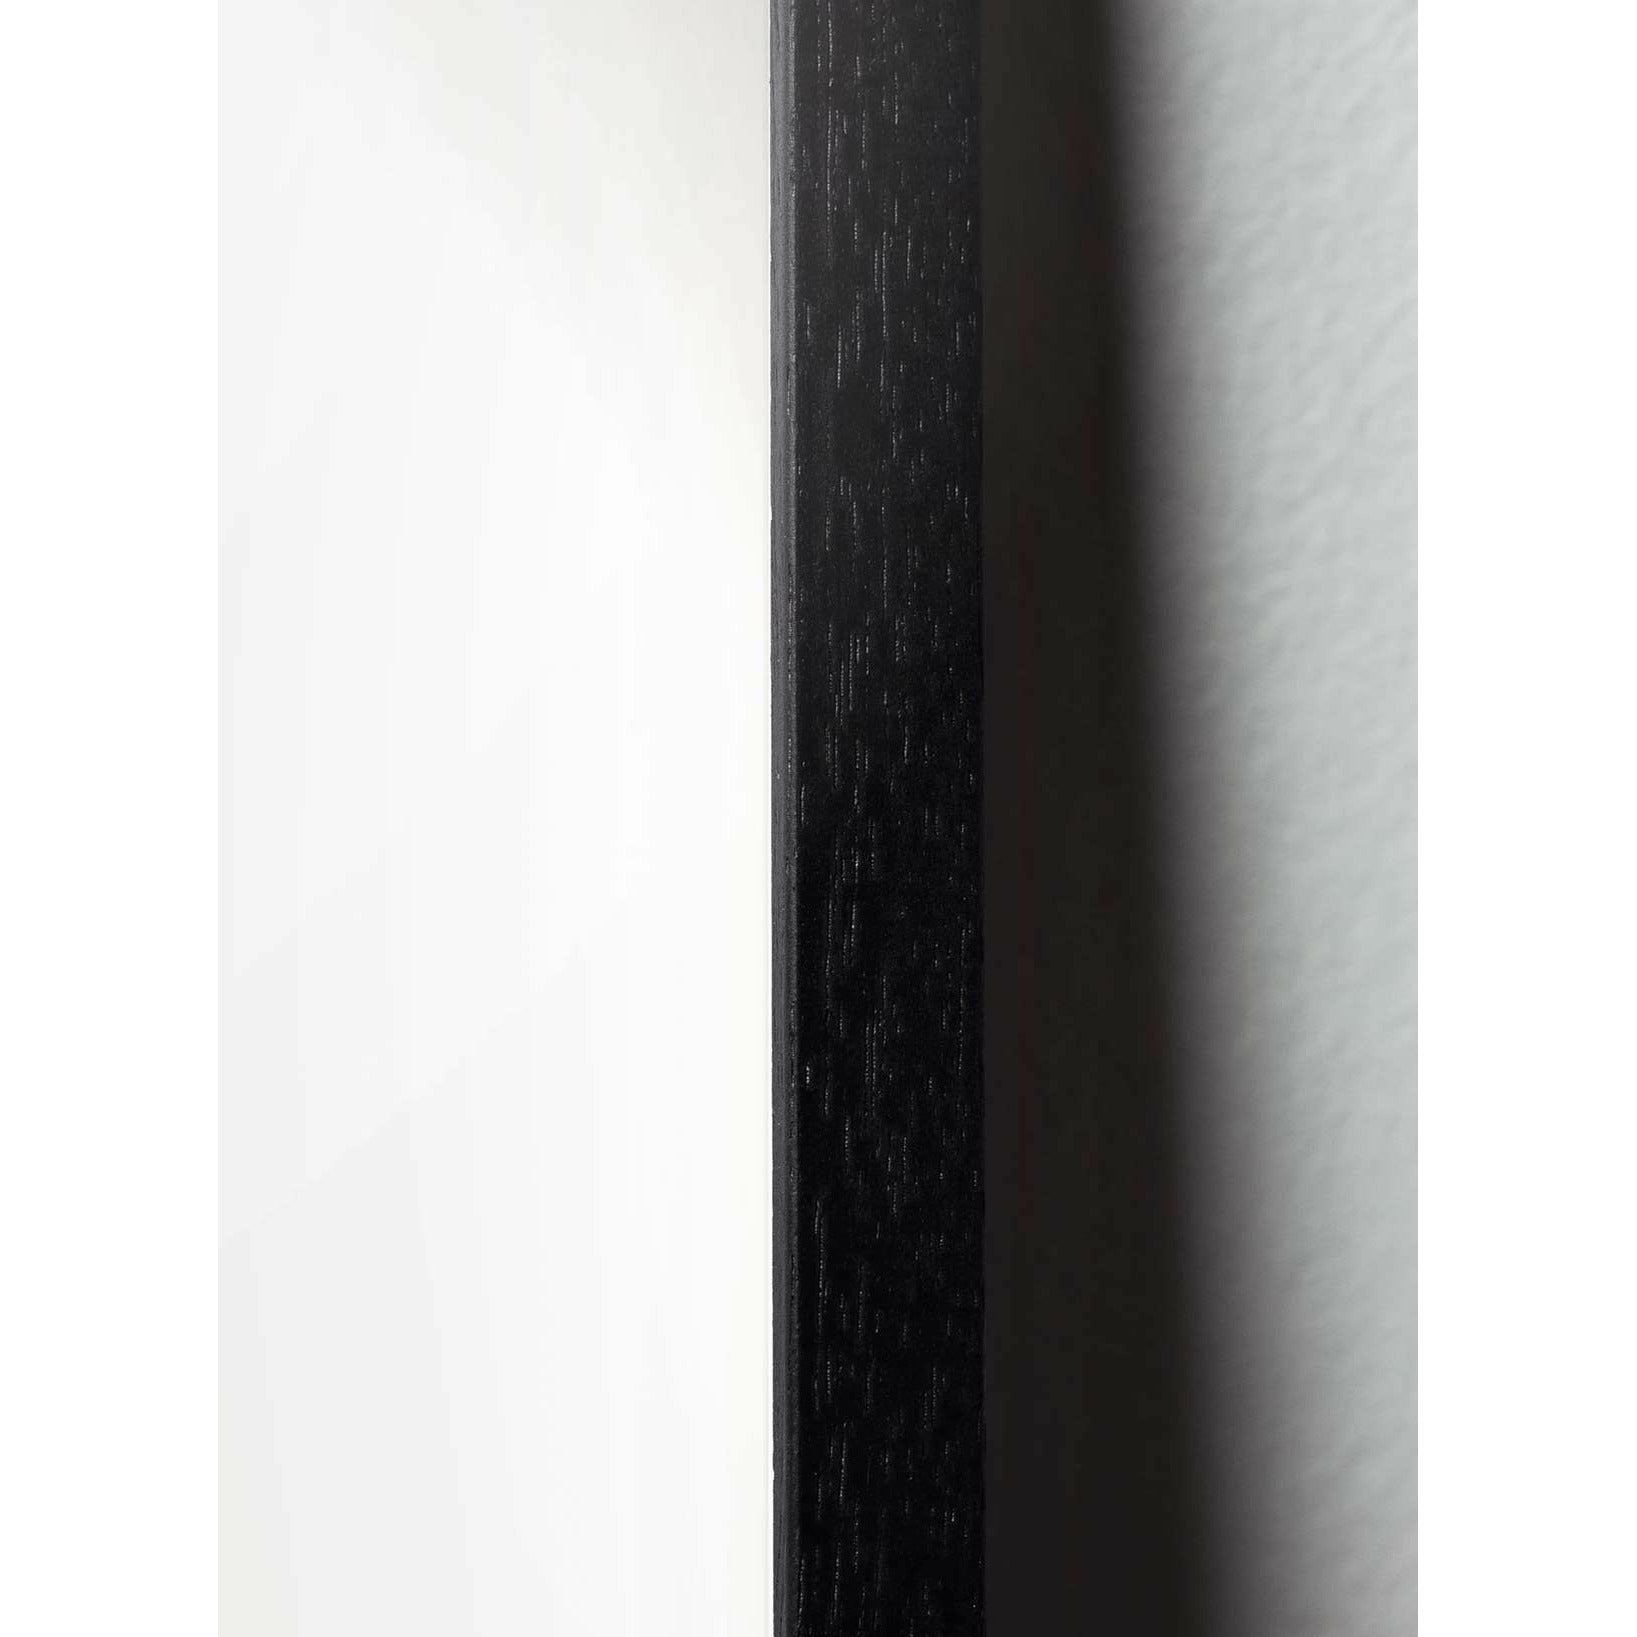 Brainchild Swan Design -ikonsaffisch, ram i svart målat trä A5, grå